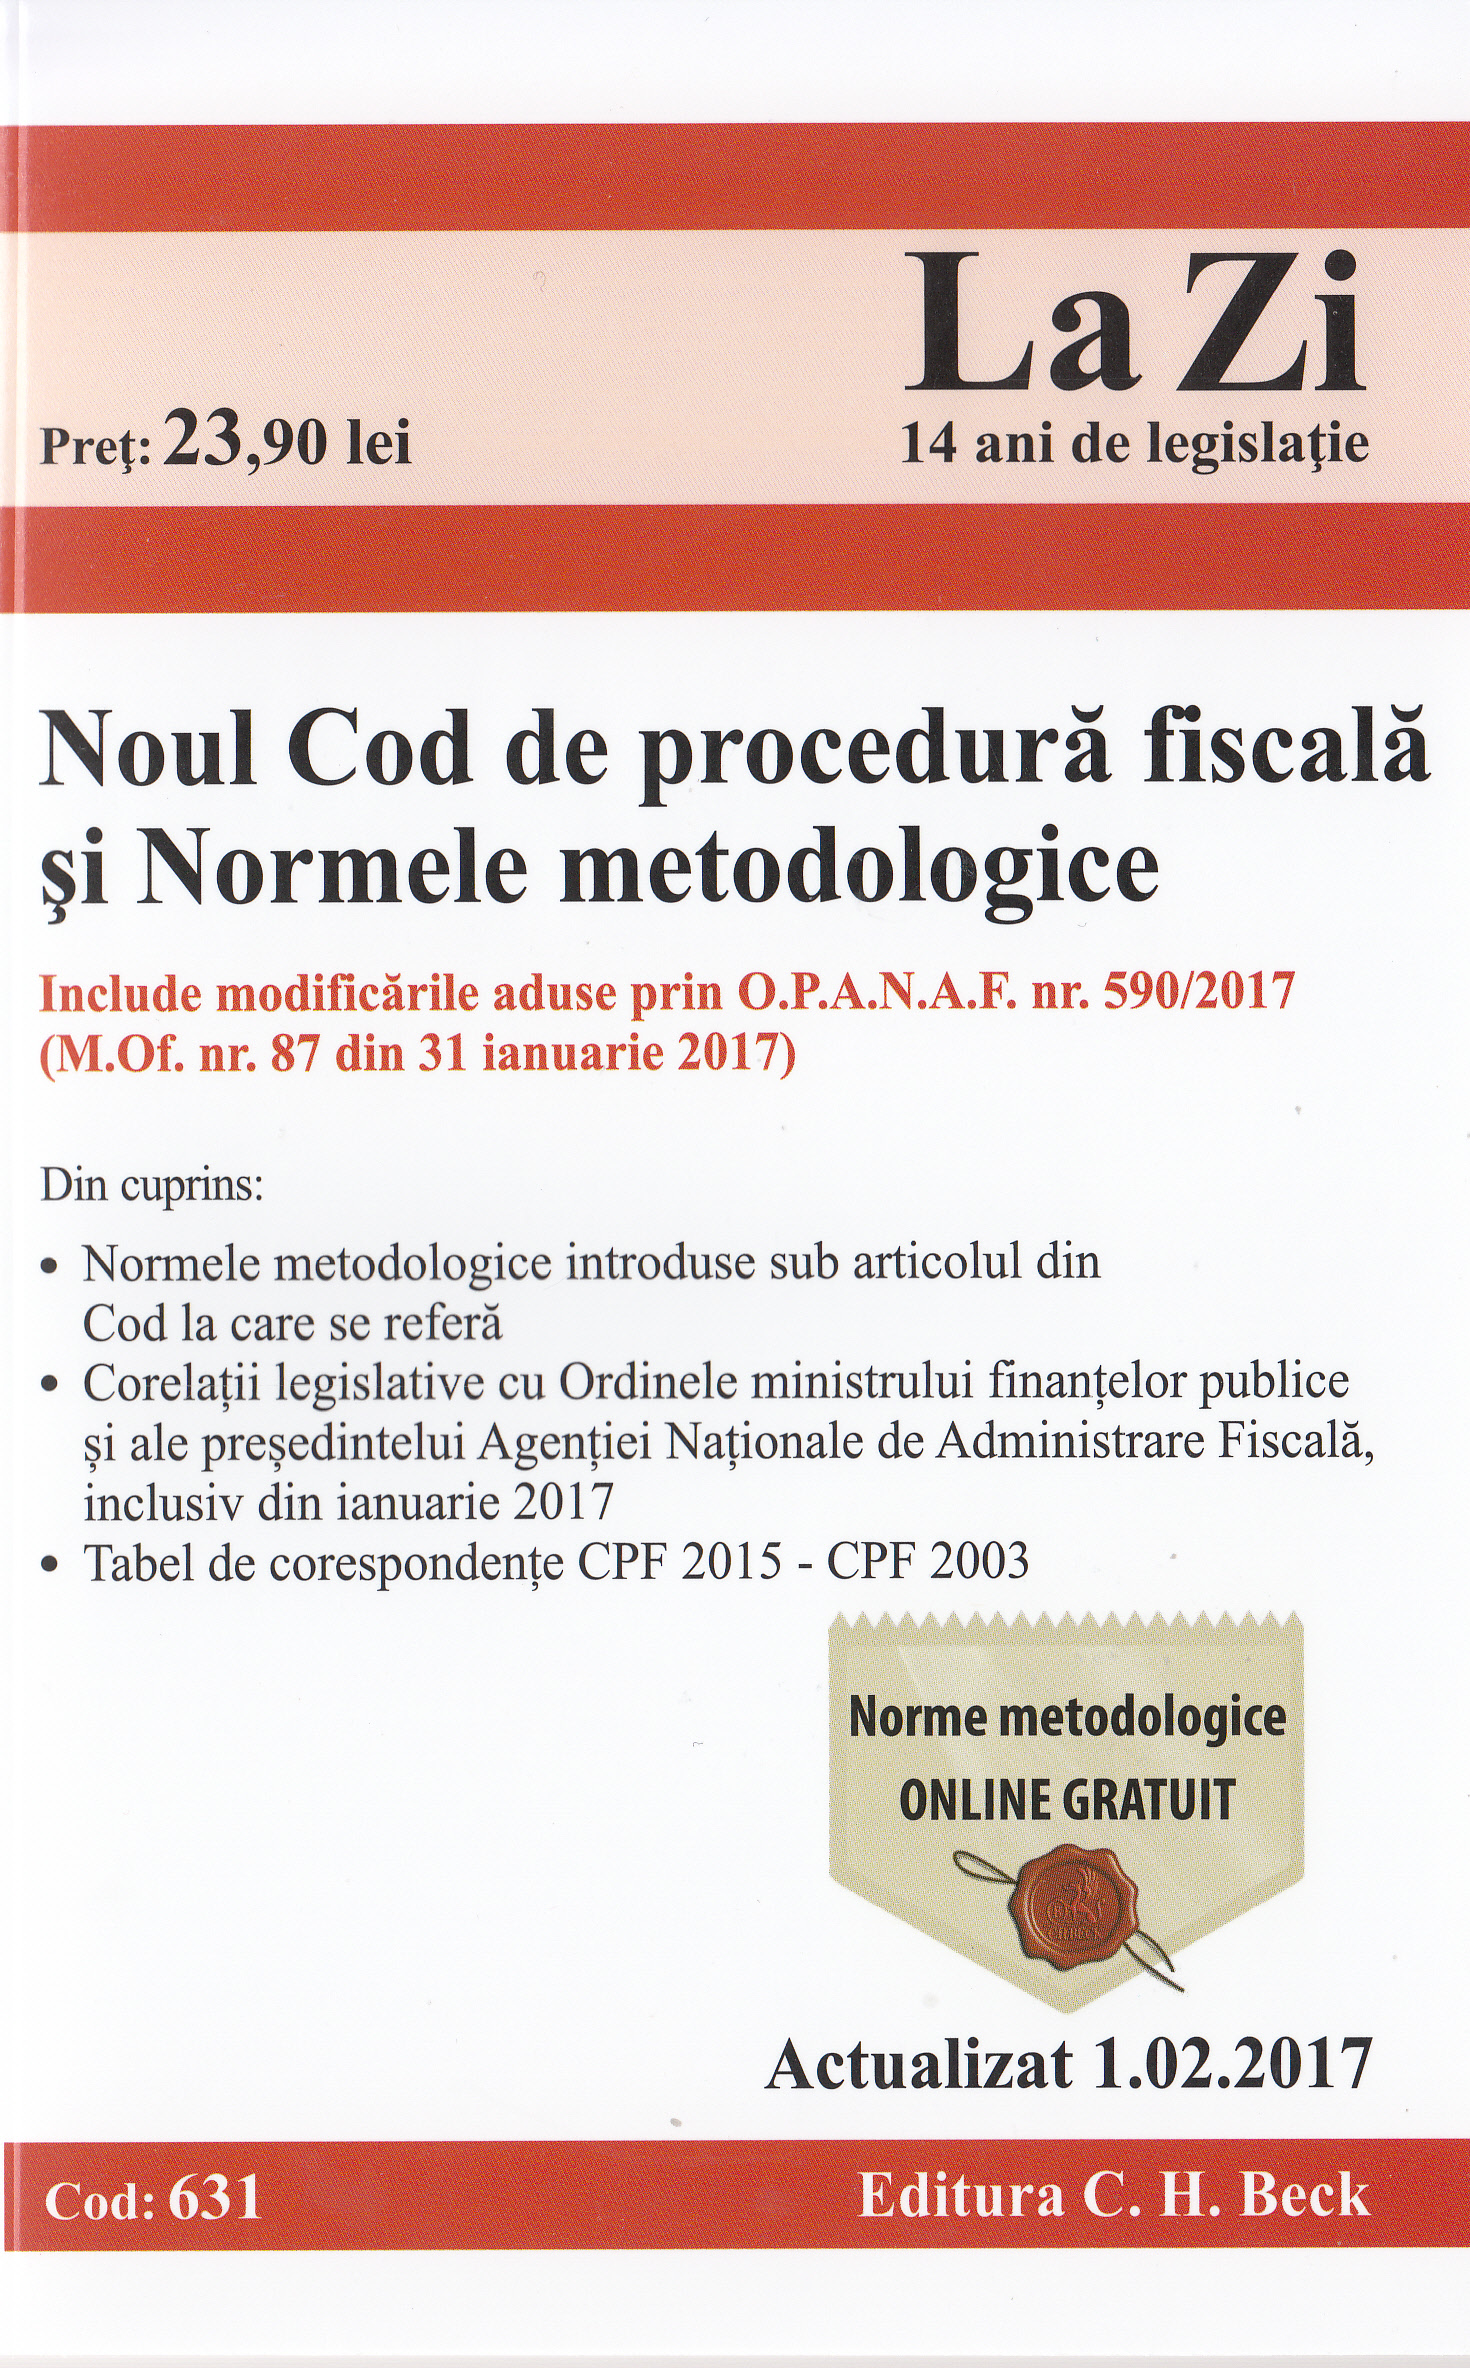 Noul Cod de procedura fiscala si Normele metodologice Act. 1.02.2017